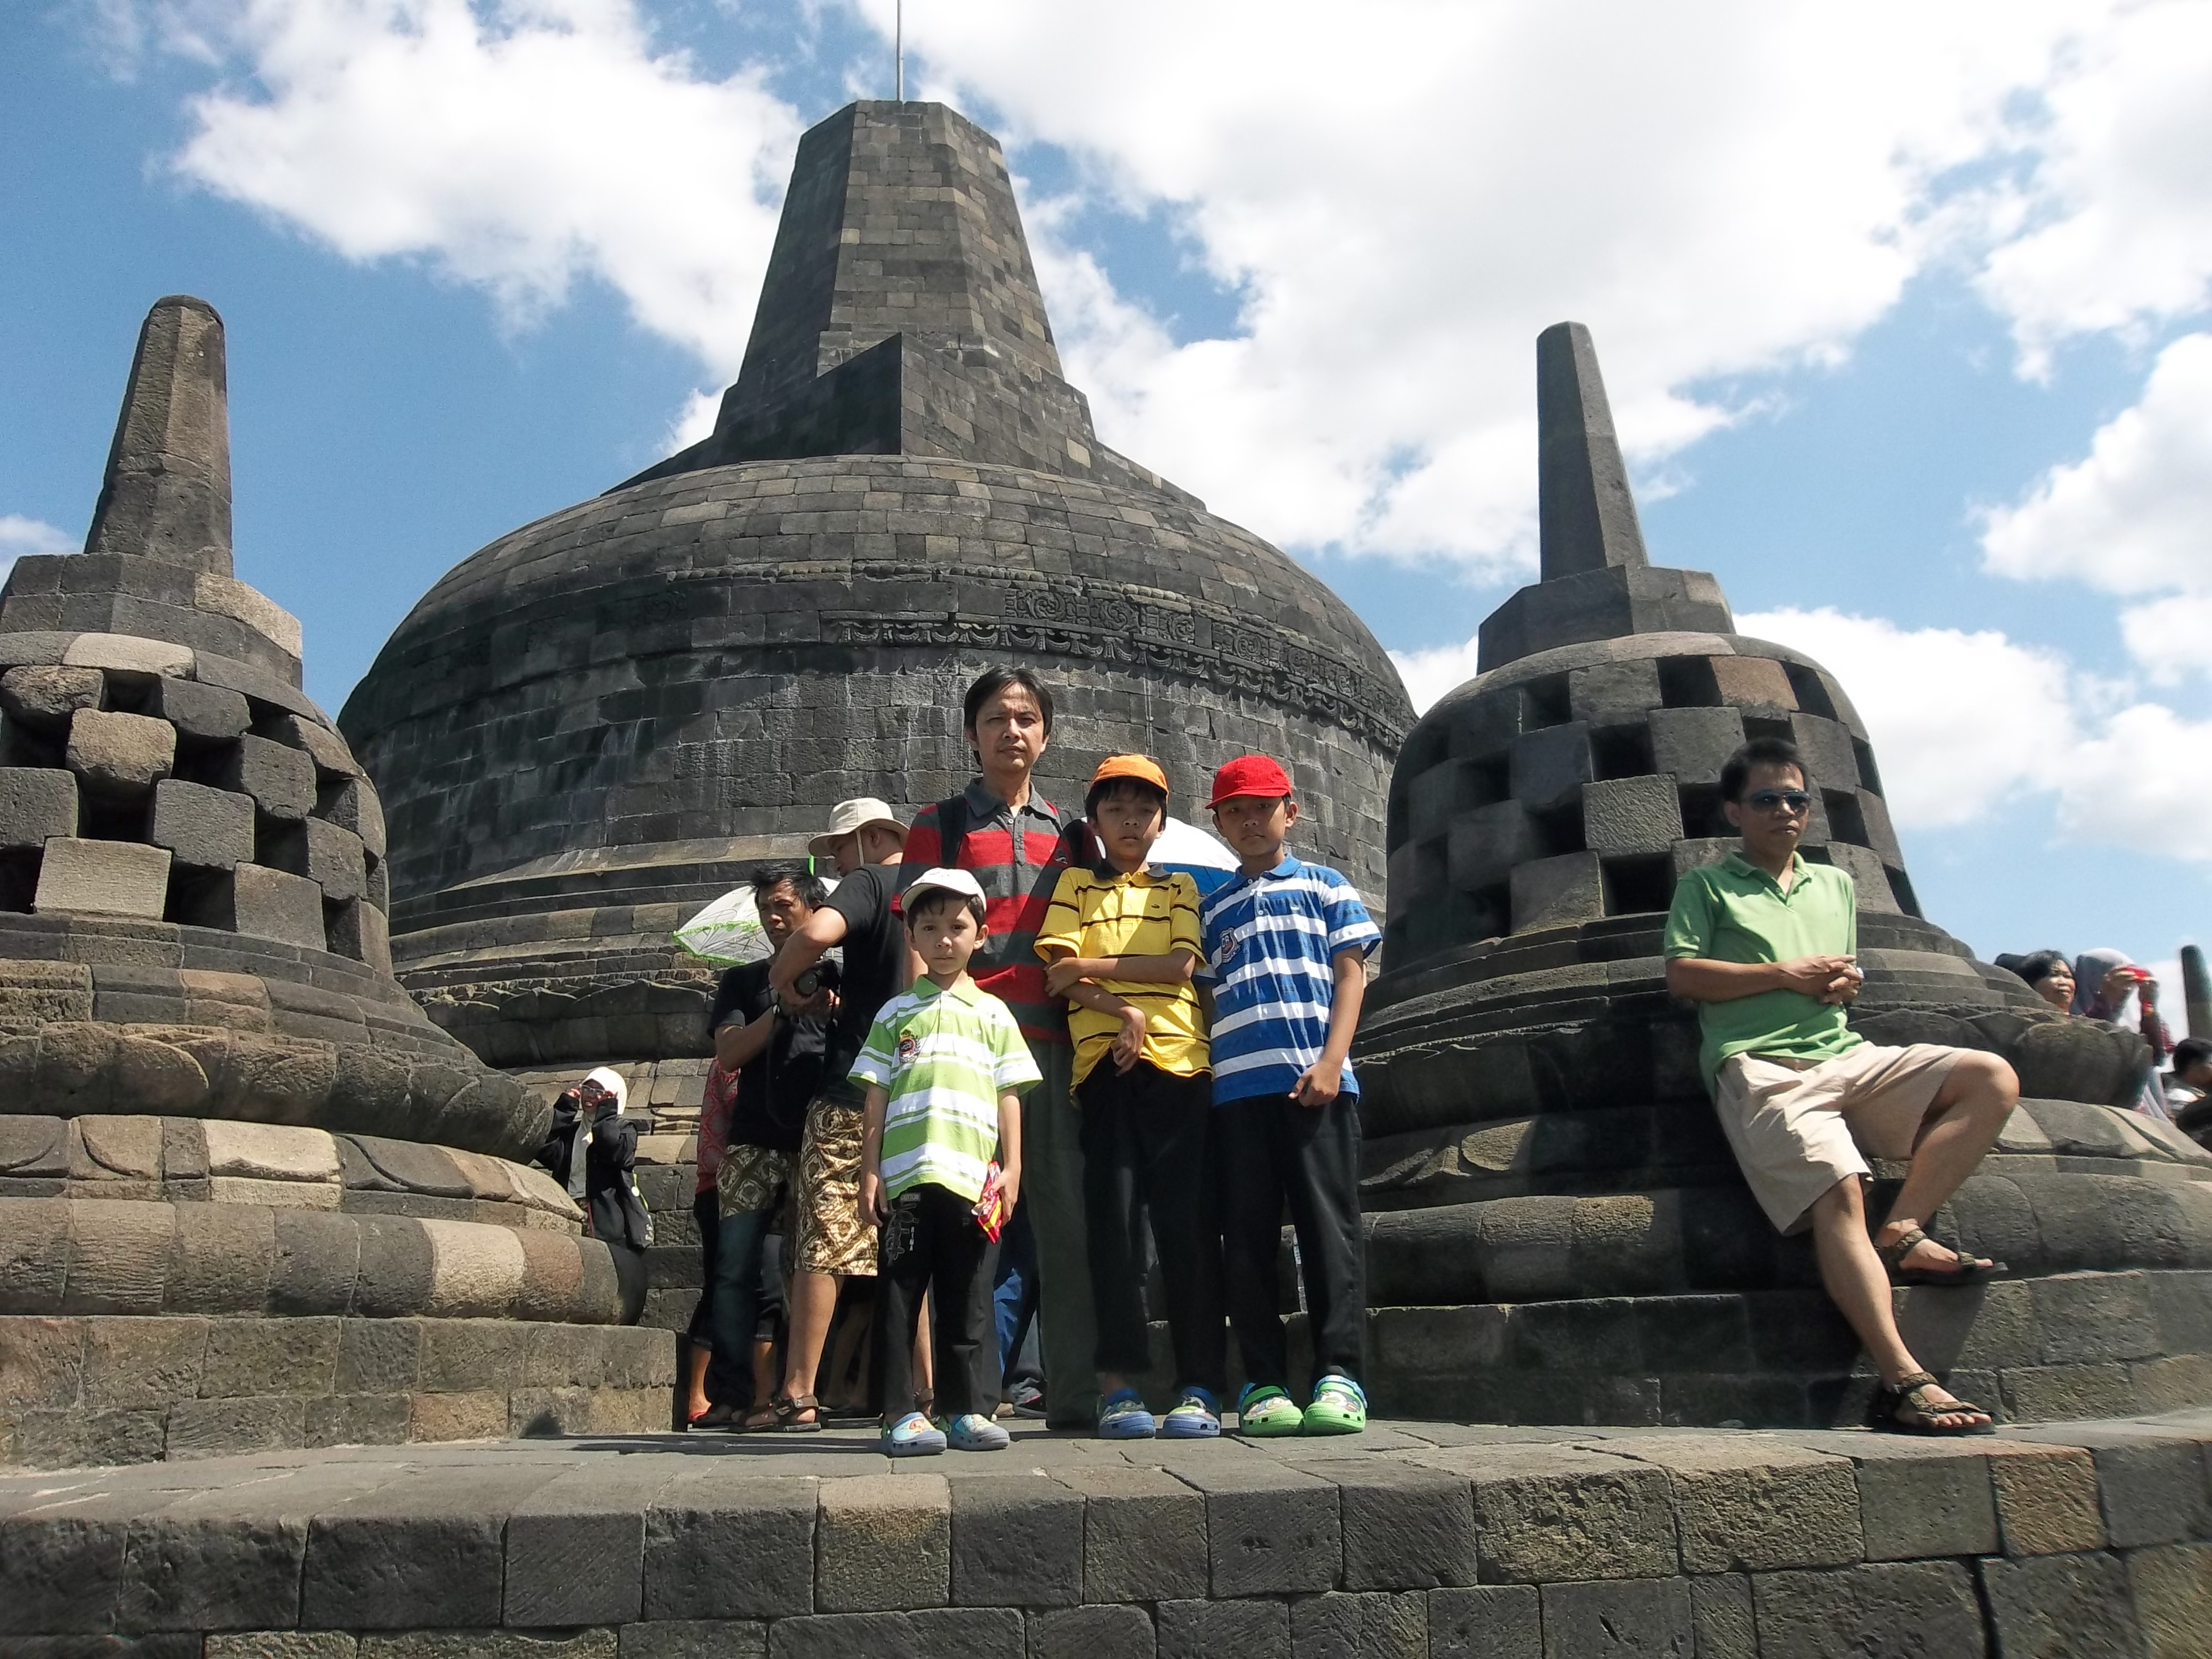 Sebenarnya Candi Mendut ini lebih dulu kita lewati sebelum sampai ke Borobudur namun memang sebaiknya Candi Mendut dikunjungi dalam perjalanan